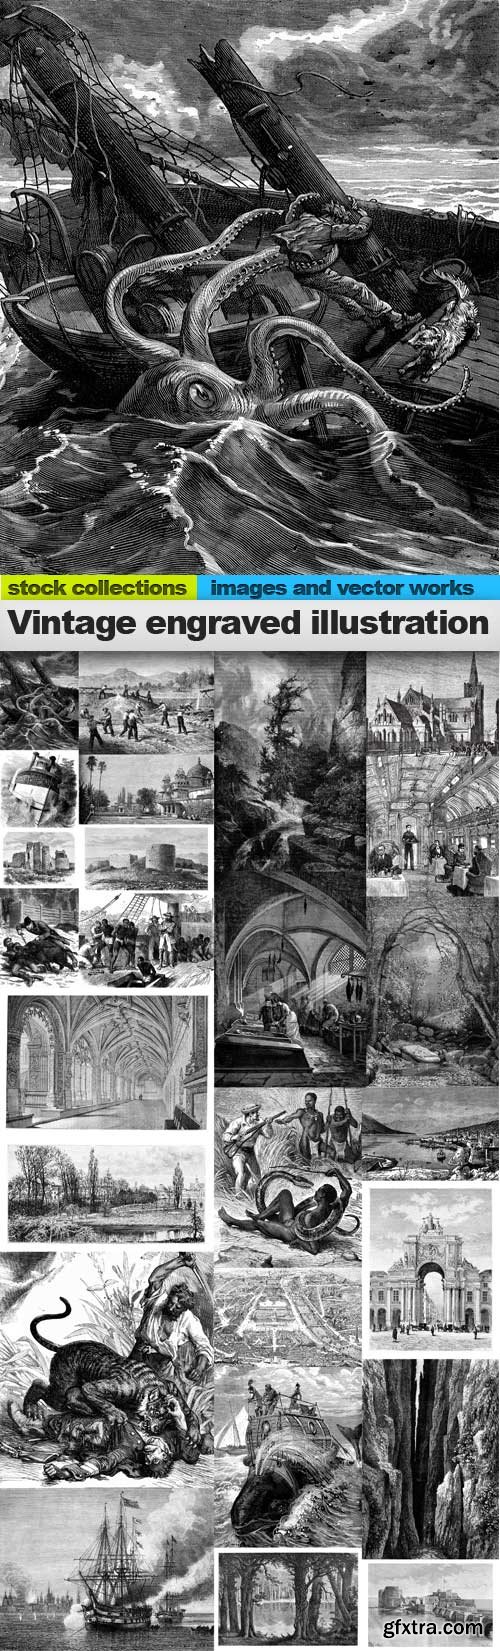 Vintage Engraved Illustration Images 25xJPG